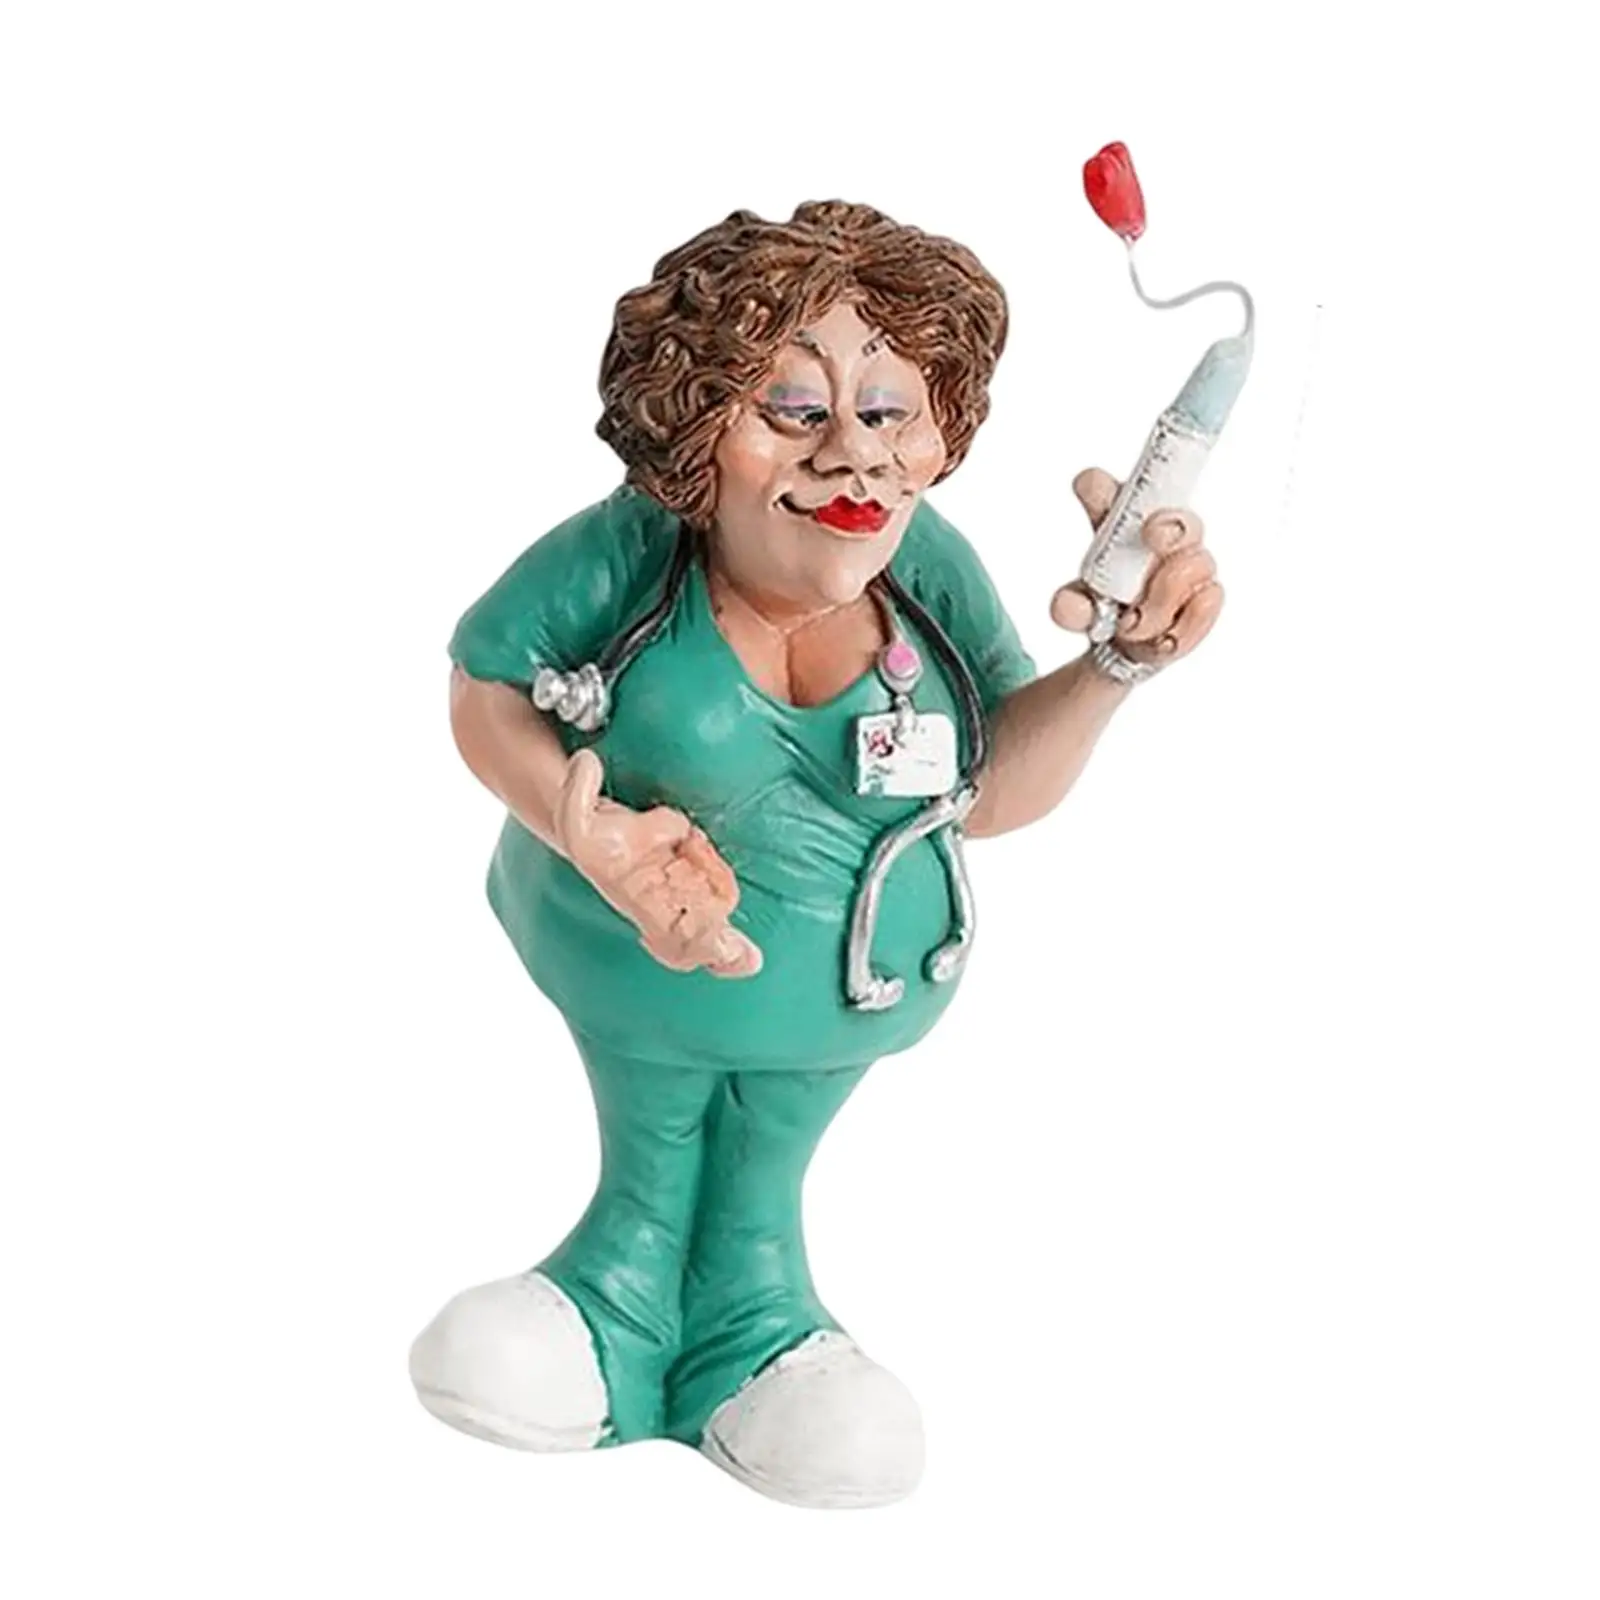 Doctor Statues Figurines Nurse Decorative Women Resin Sculpture for Office Bookshelf